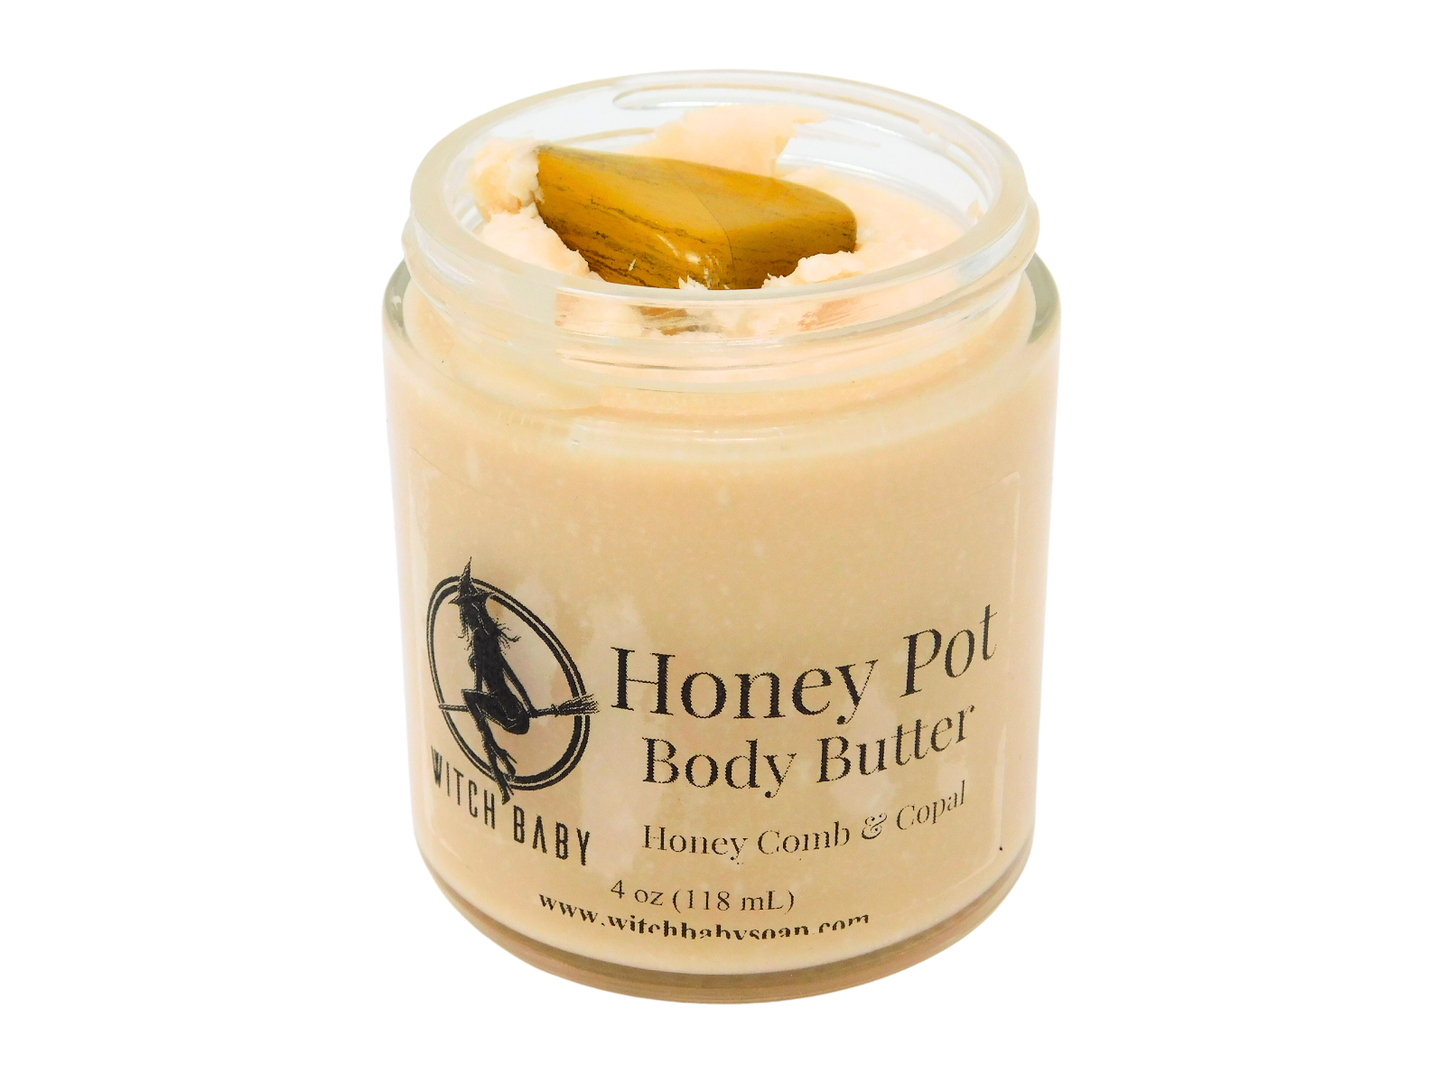 Honey Pot Body Butter